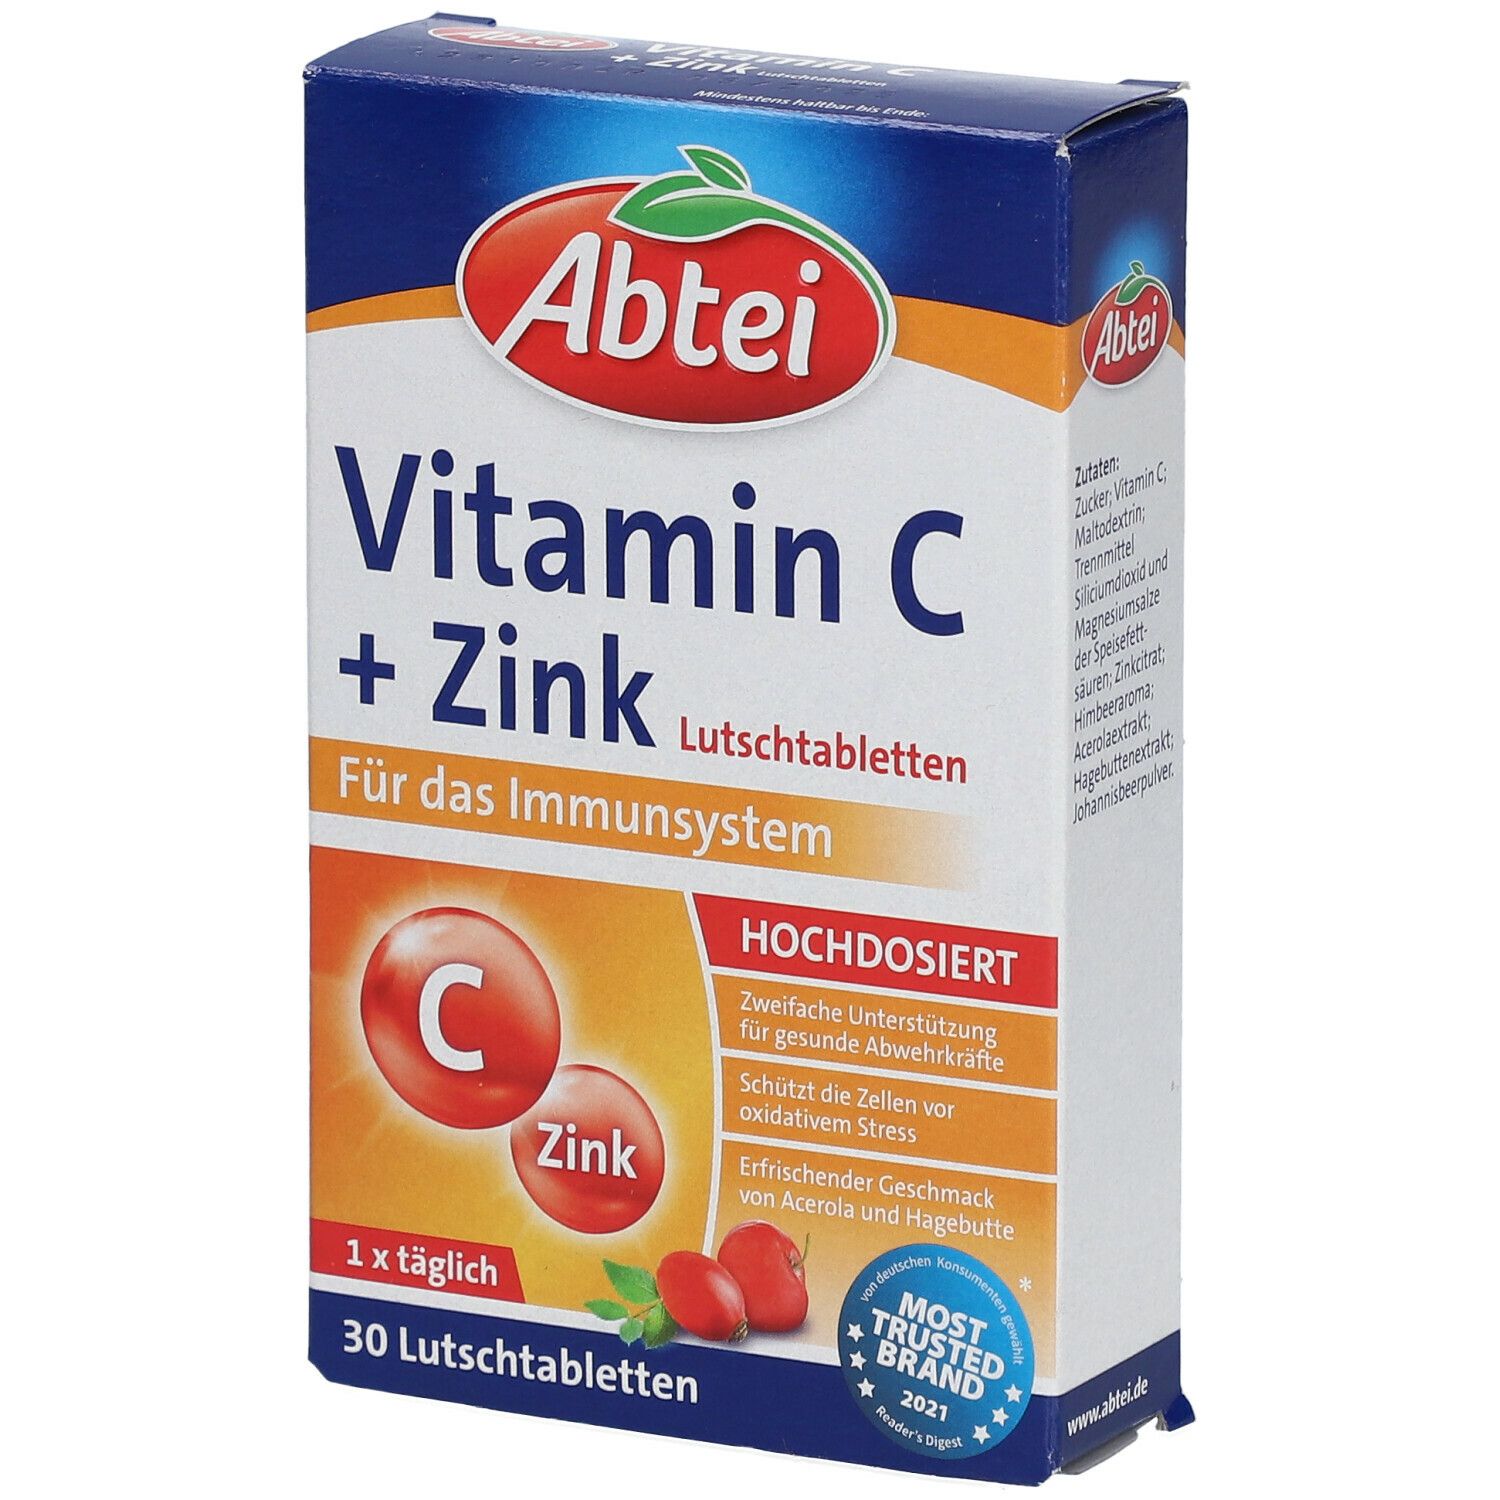 Abtei Vitamine C + Zinc